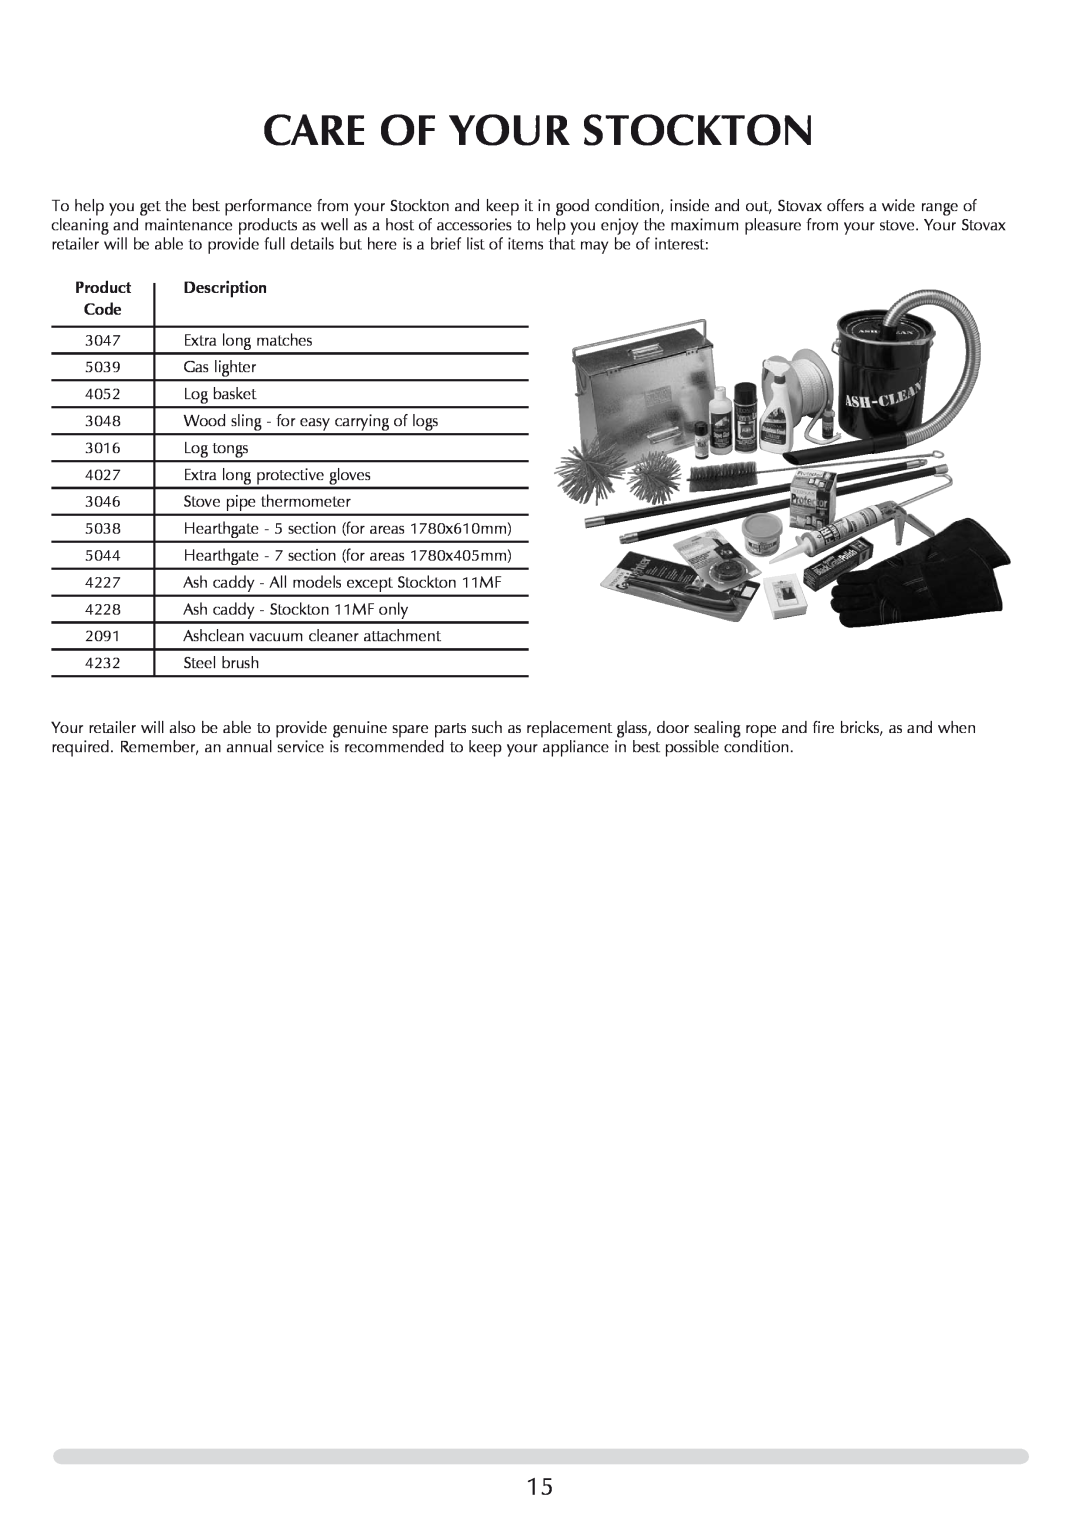 Stovax 7118 manual Care Of Your Stockton, Description 